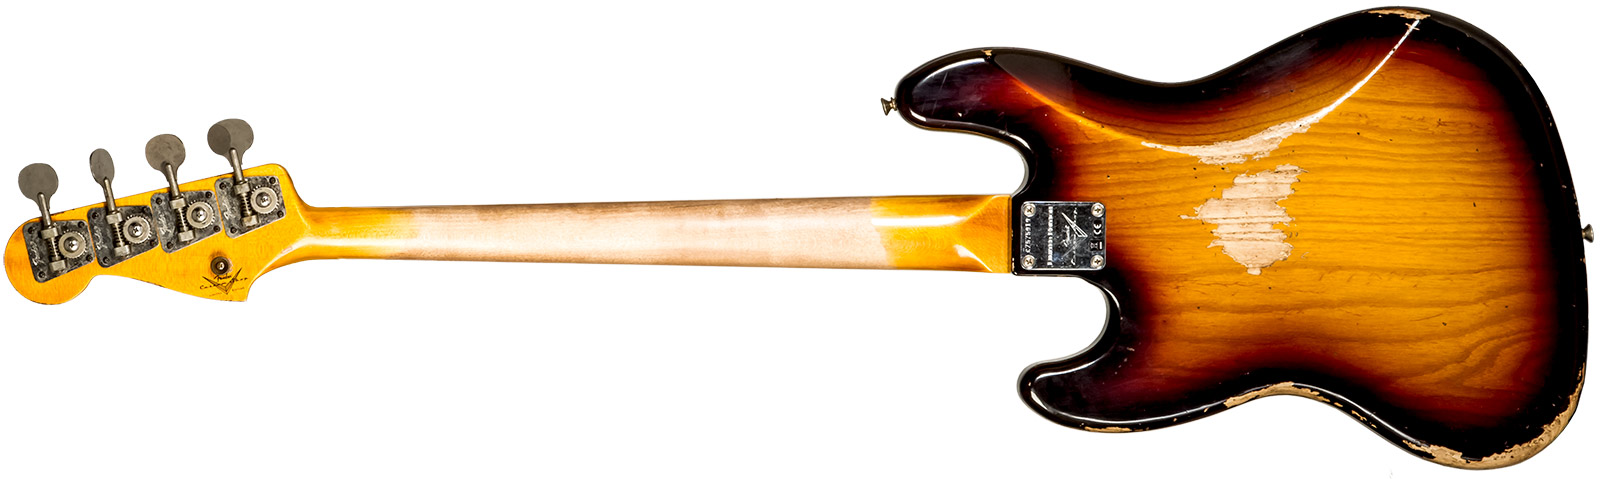 Fender Custom Shop Jazz Bass Custom Rw #cz575919 - Heavy Relic 3-color Sunburst - Bajo eléctrico de cuerpo sólido - Variation 2